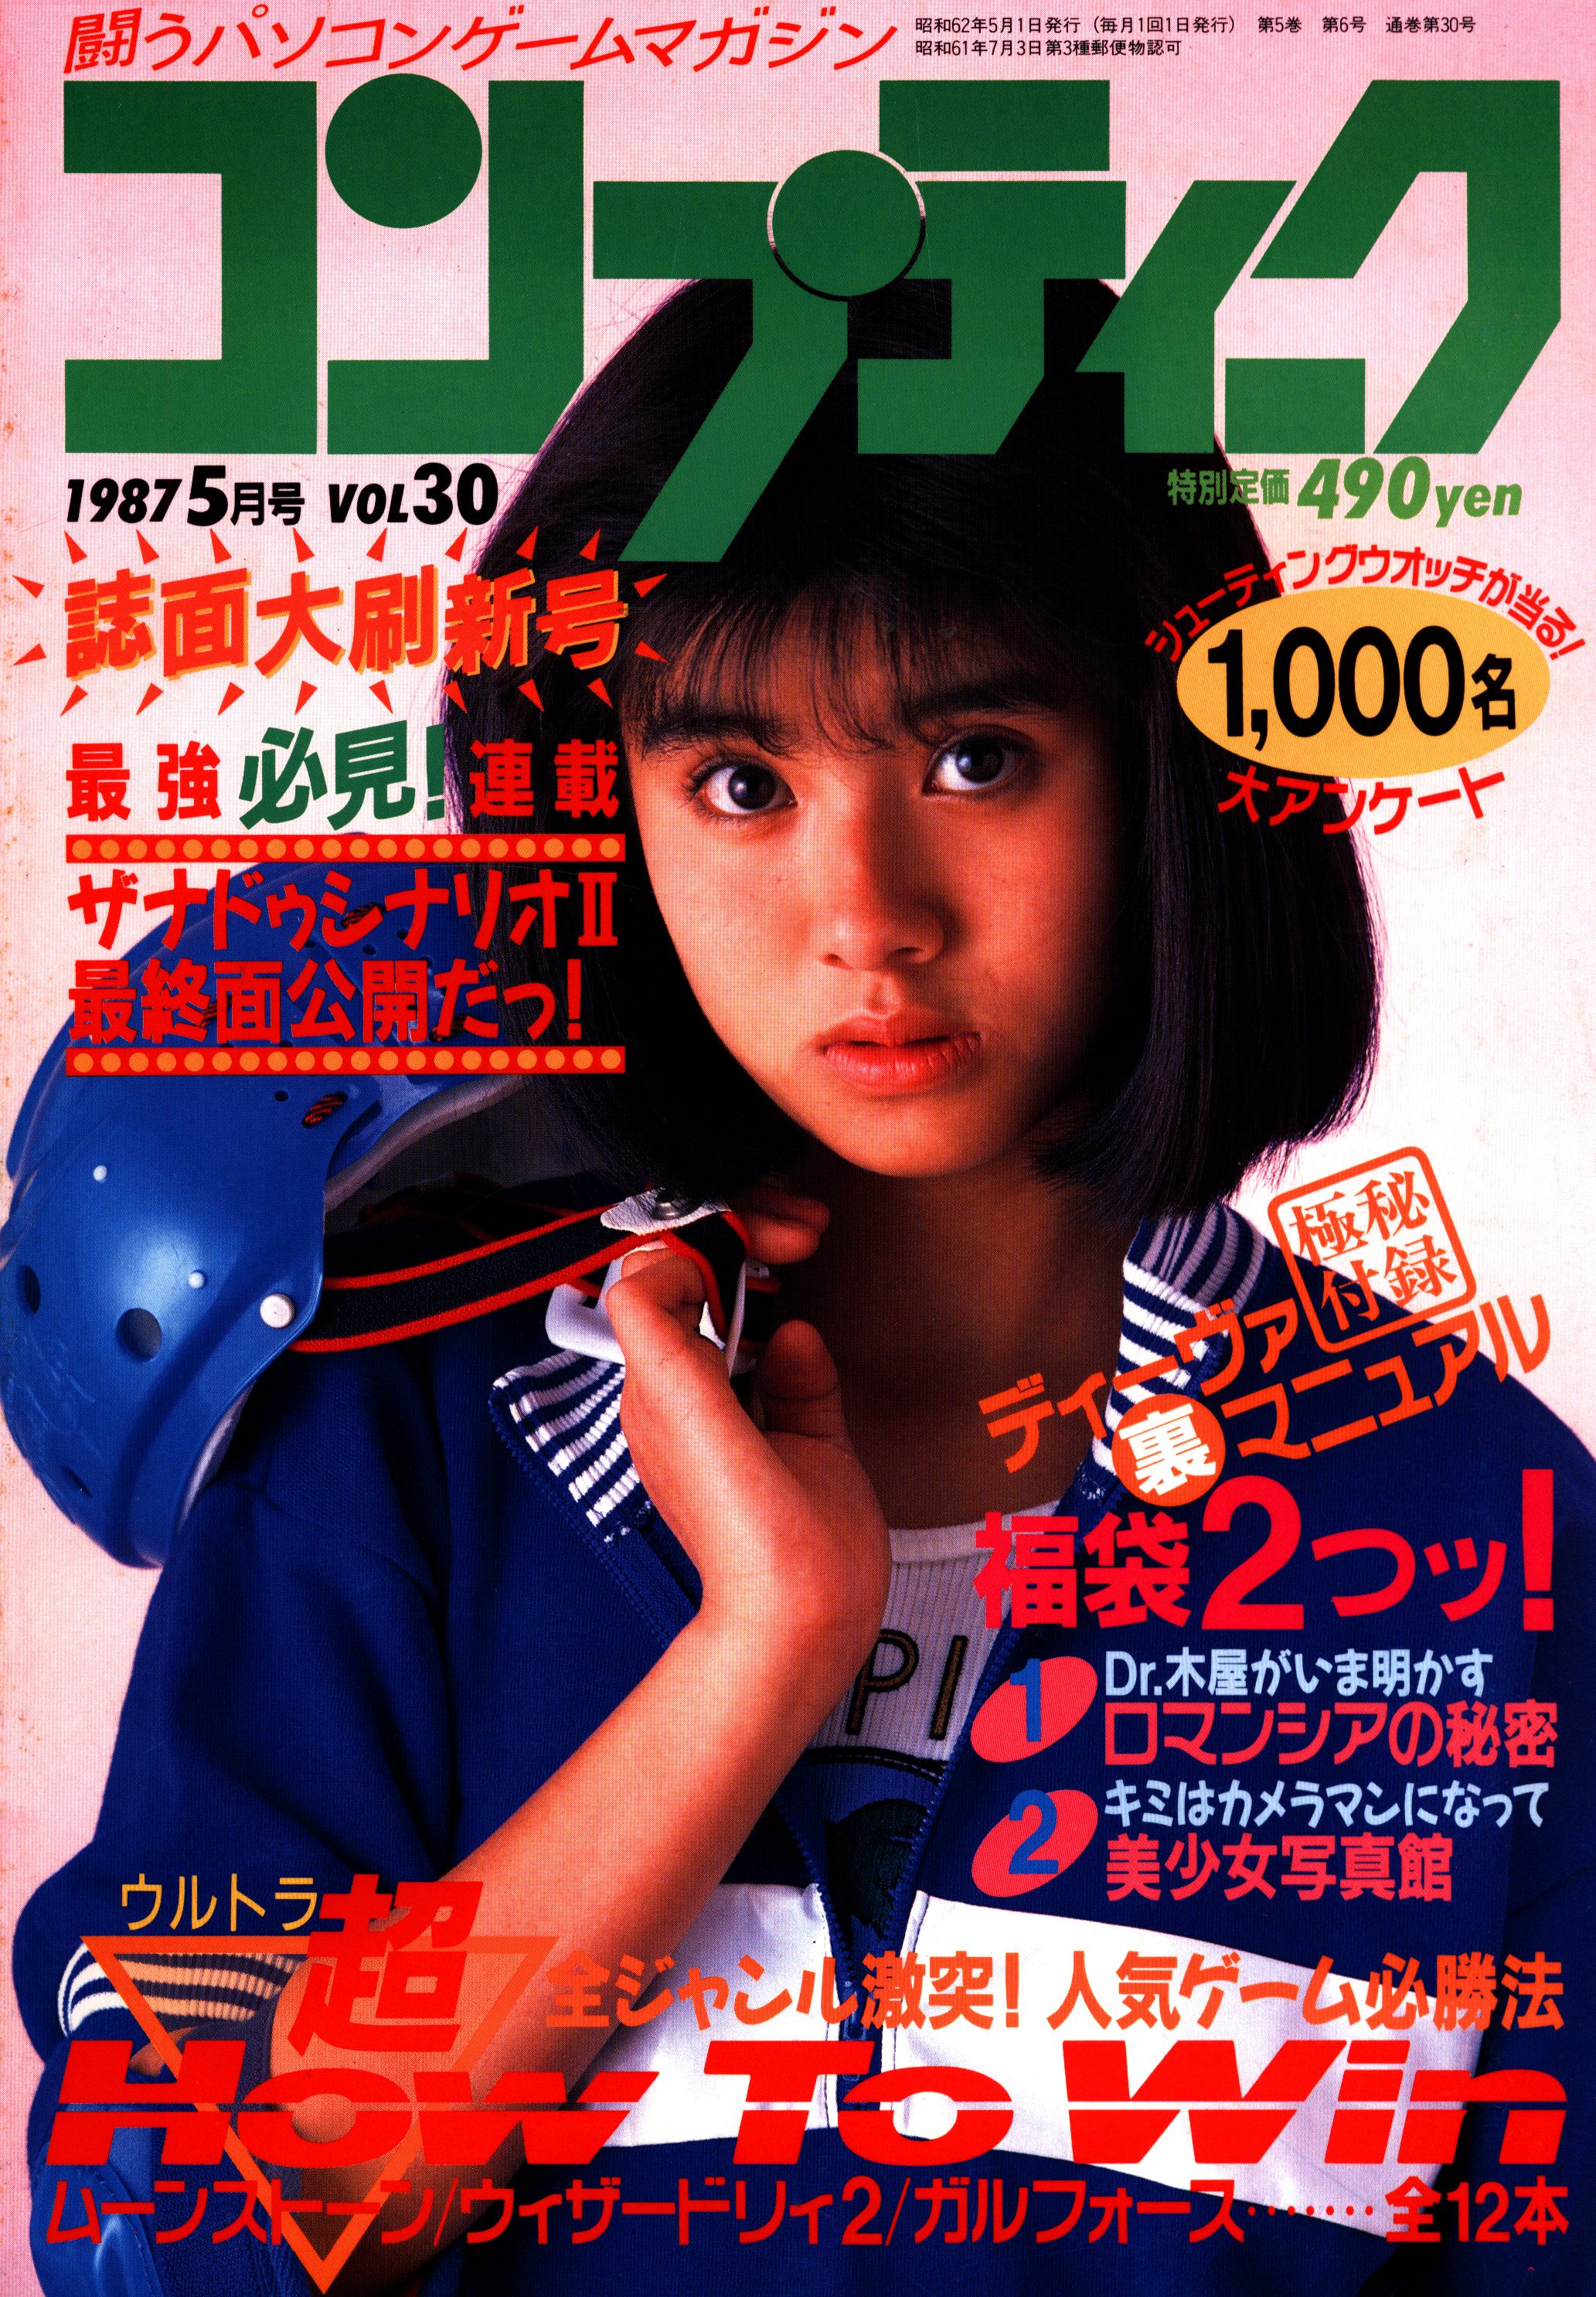 新作好評f110 雑誌 月刊 コンプティーク 1989年 1～12月号 通年 全揃い まとめて12冊set Comptiq コンプ 角川書店 KADOKAWA パソコンゲーム